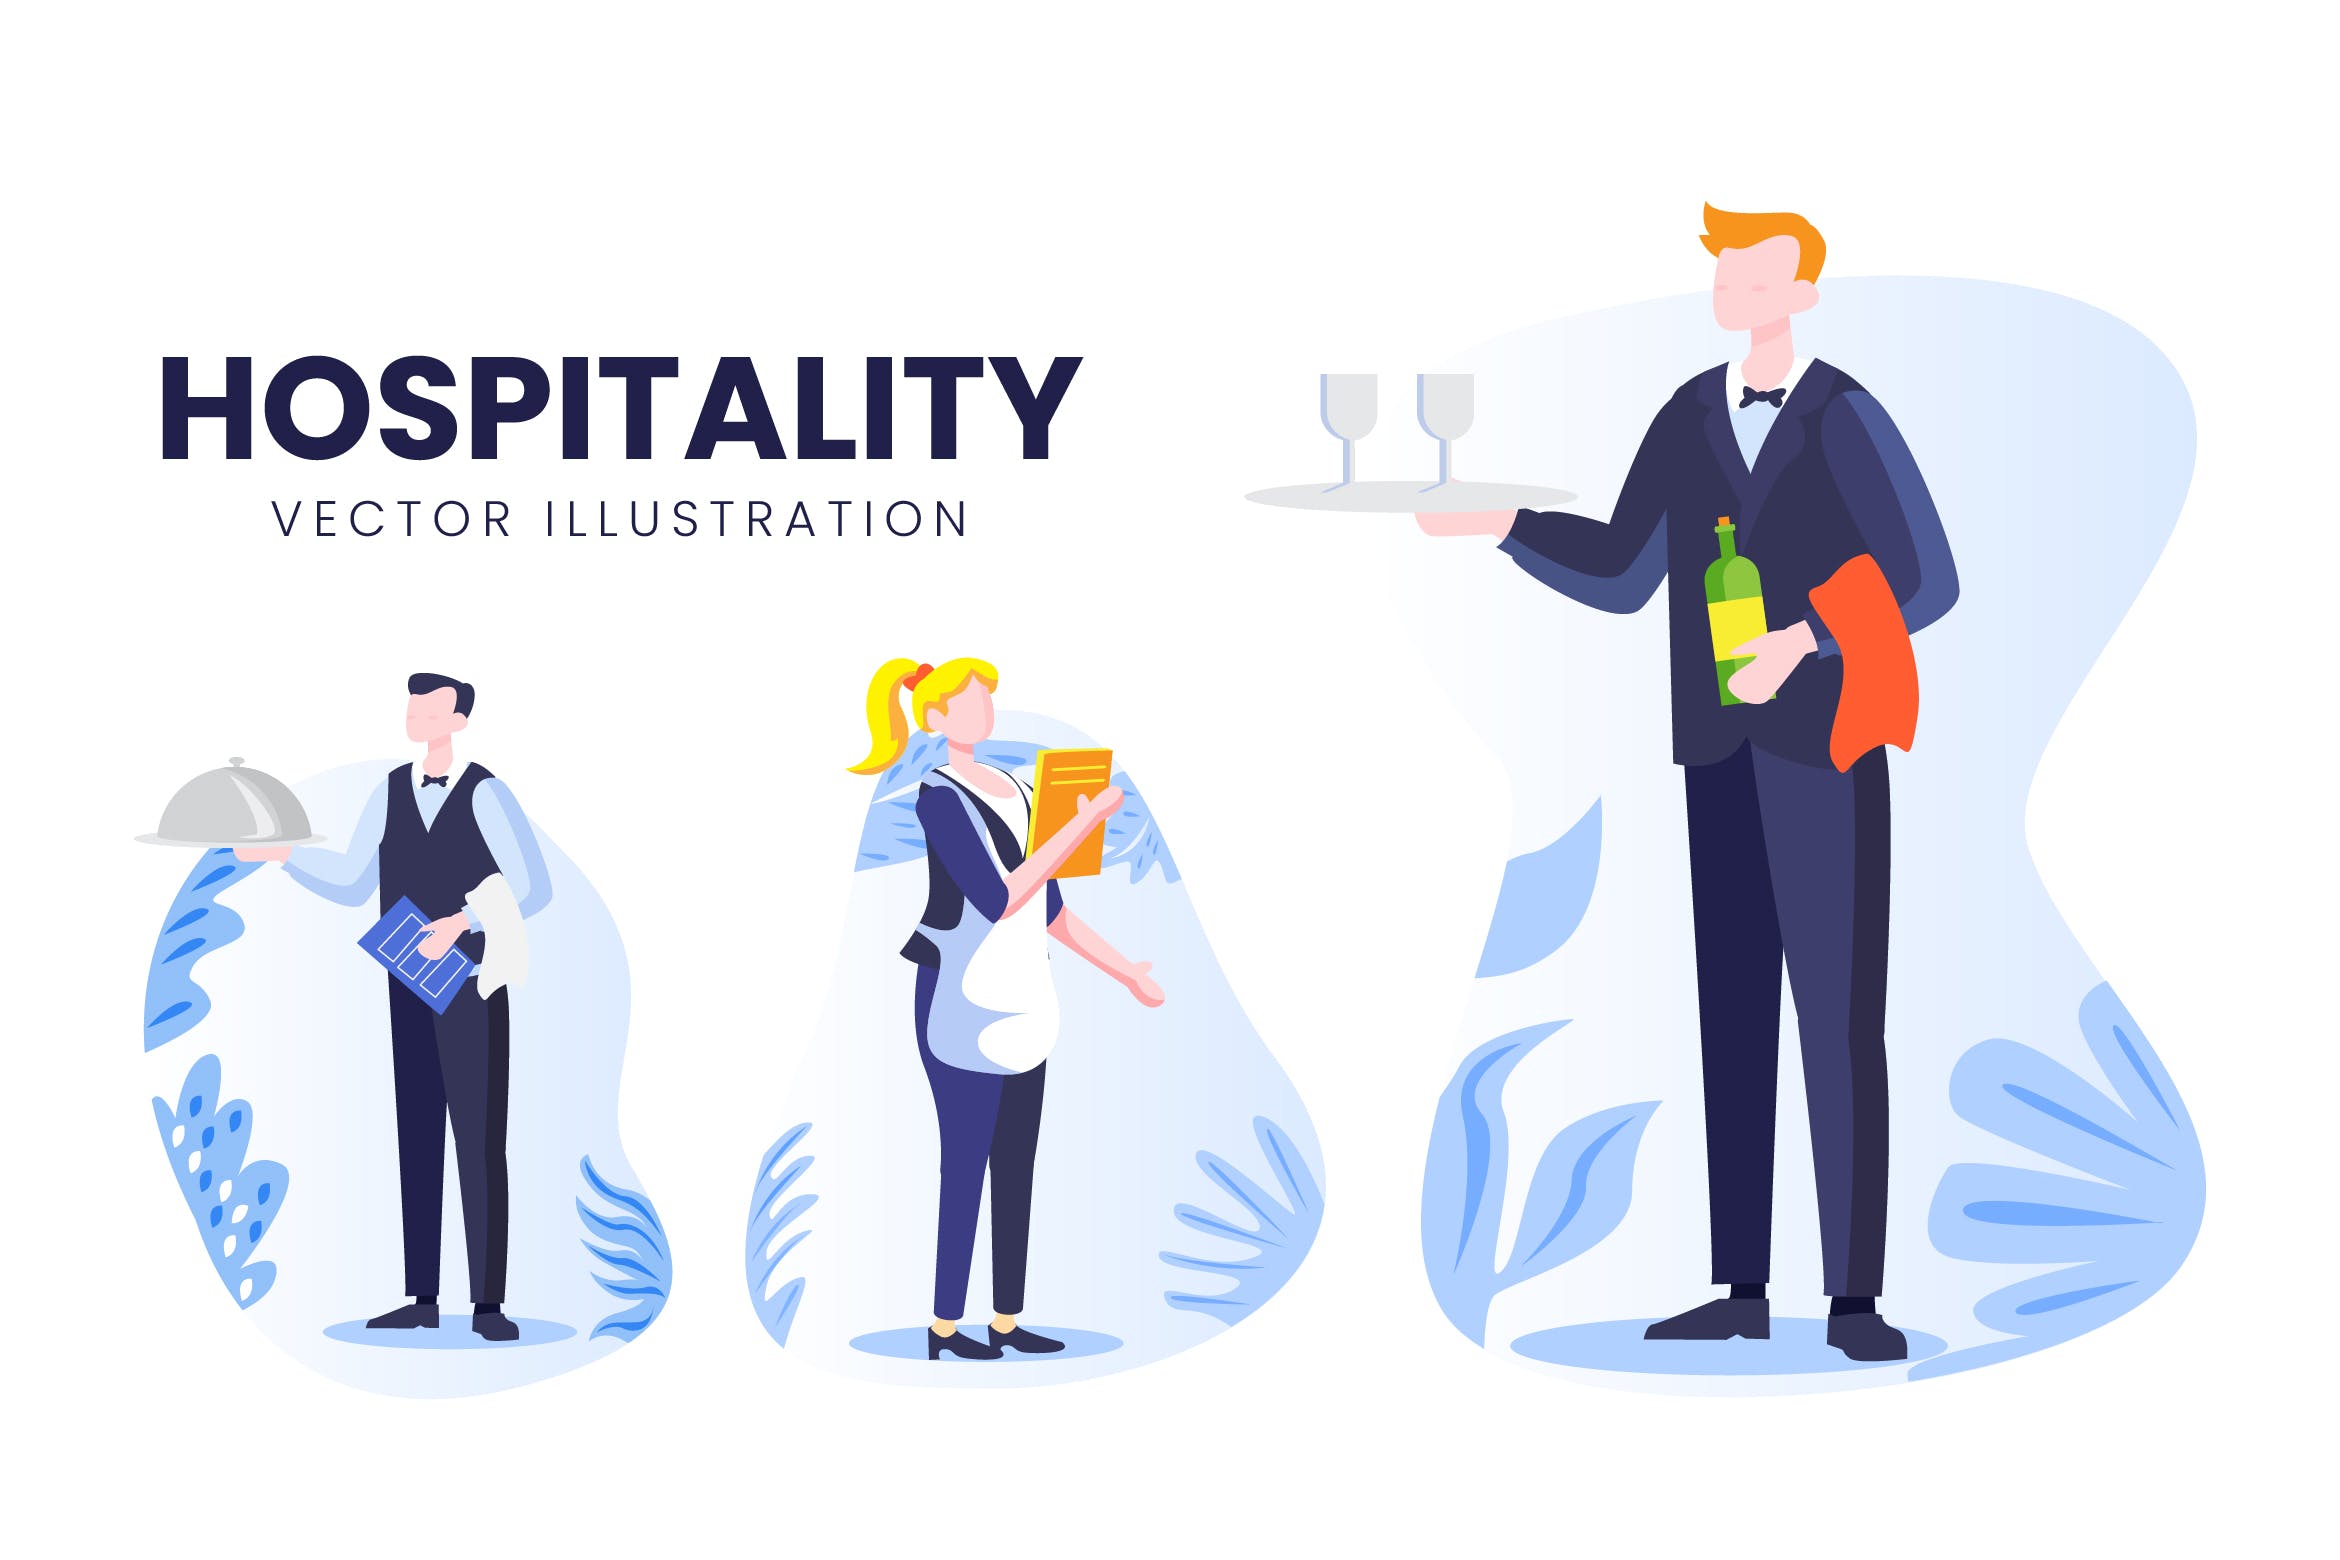 酒店职员人物形象16设计网精选手绘插画矢量素材 Hospitality Occupation Vector Character Set插图